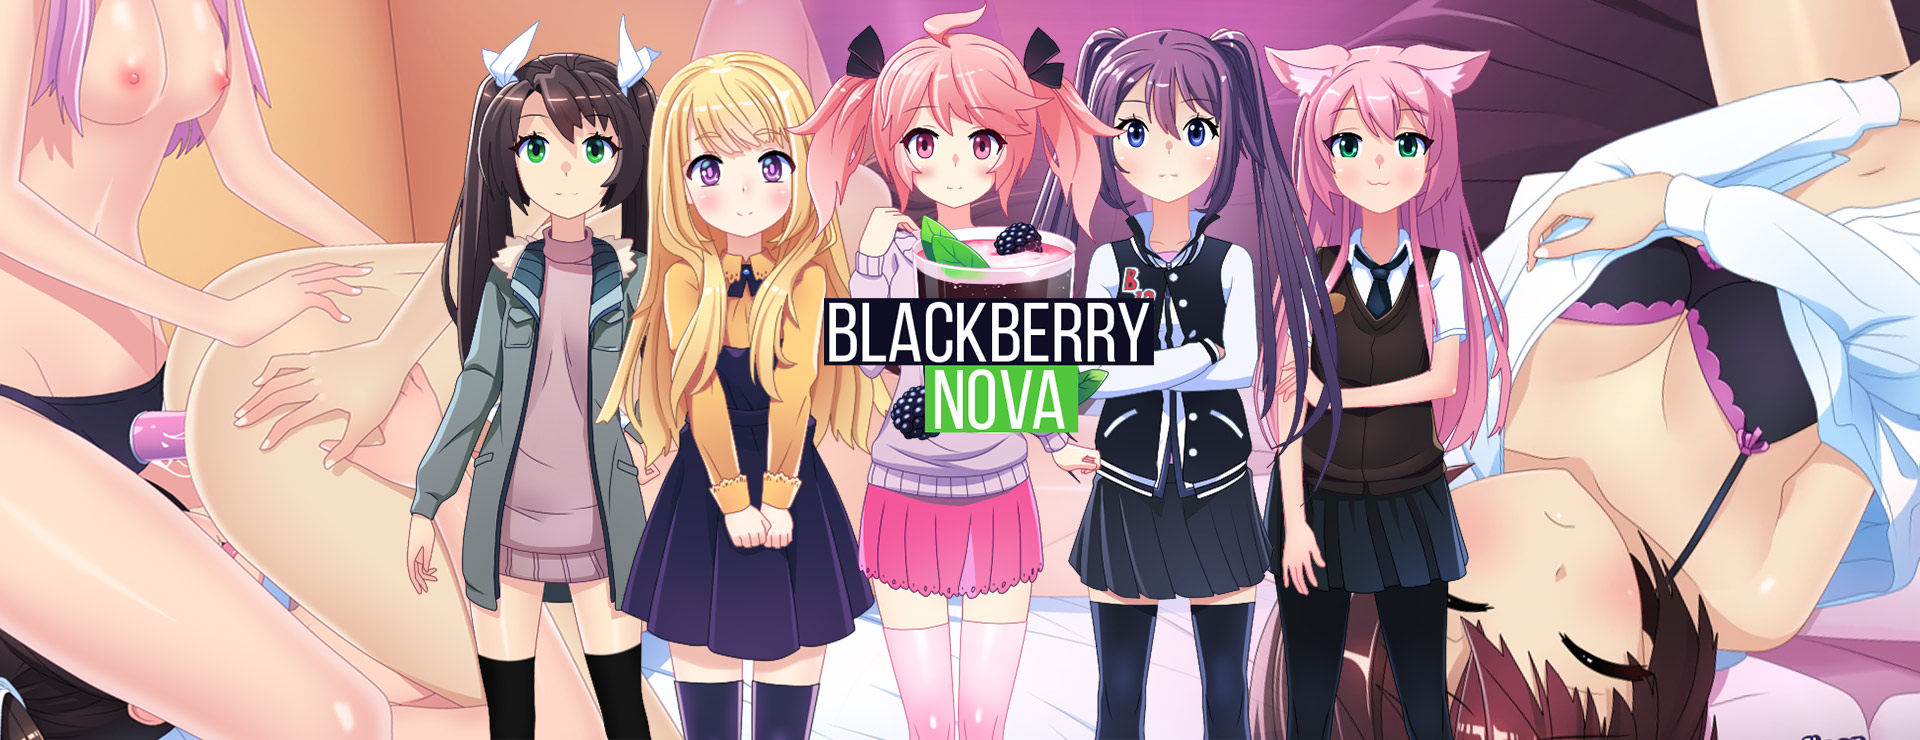 BlackberryNOVA - Japanisches Adventure Spiel